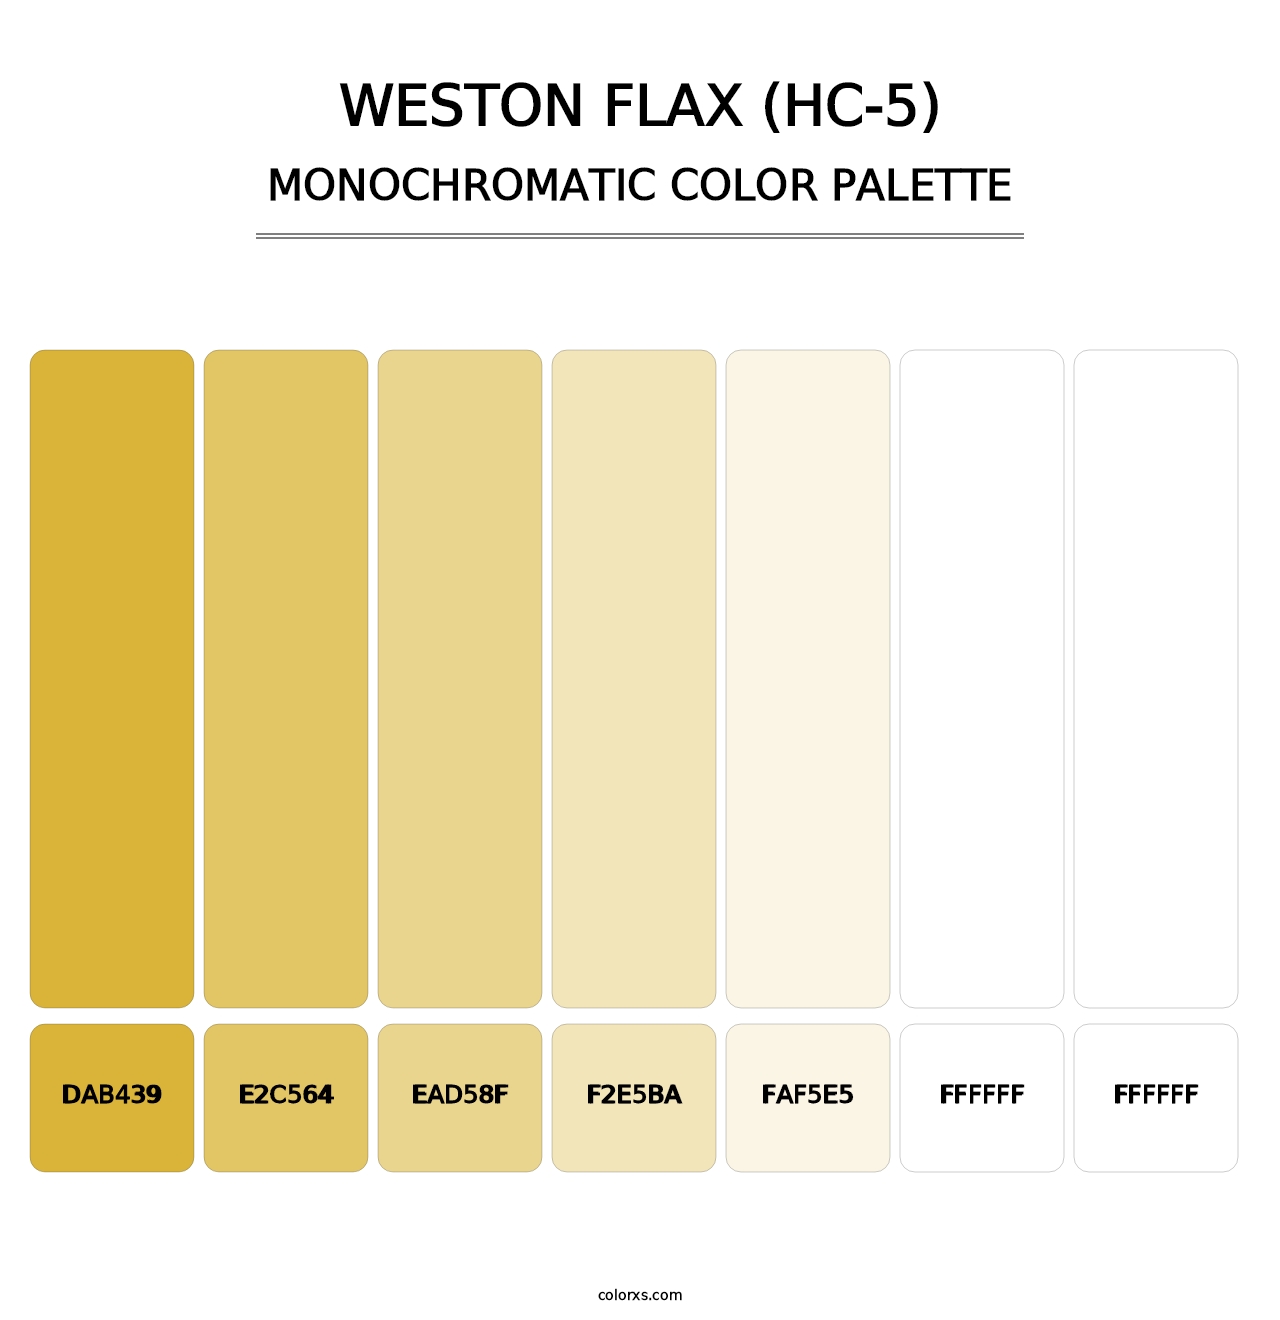 Weston Flax (HC-5) - Monochromatic Color Palette